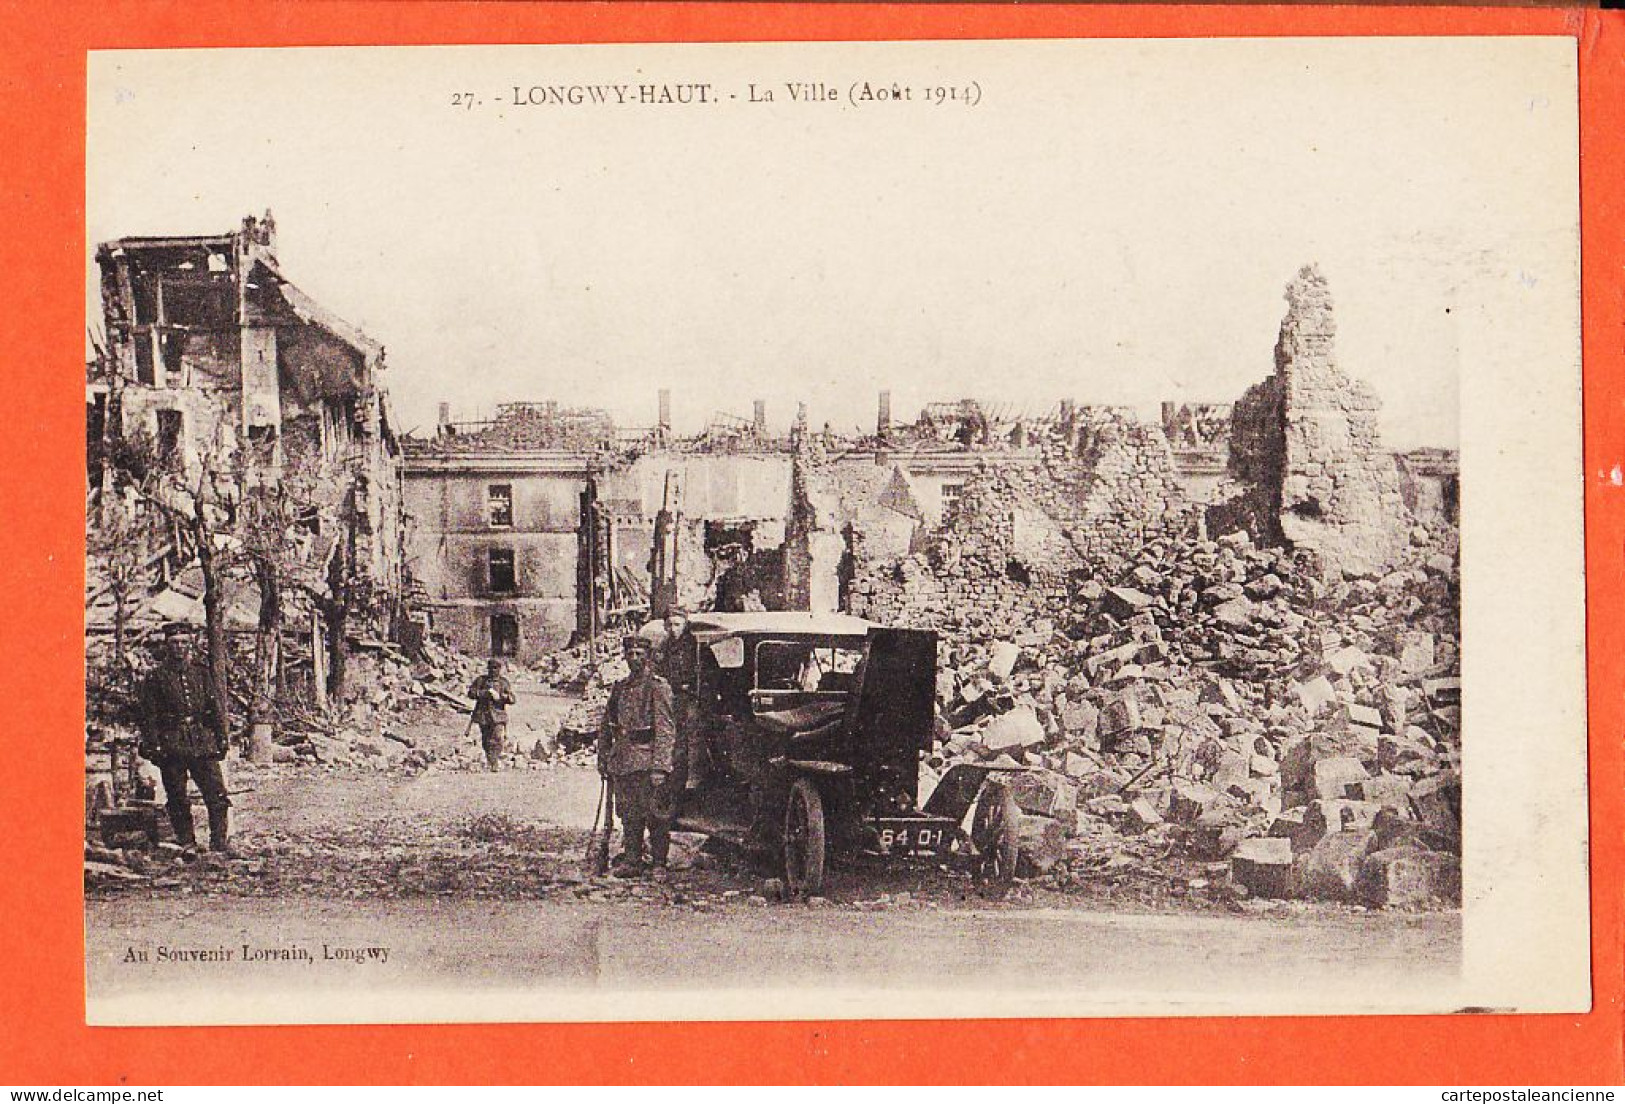 30946 / LONGWY-HAUT 54-Meurthe Moselle La Ville Aout 1914 Automobile Guerre 14-1918 CpaWW1 Au Souvenir LORRAIN 27 - Longwy